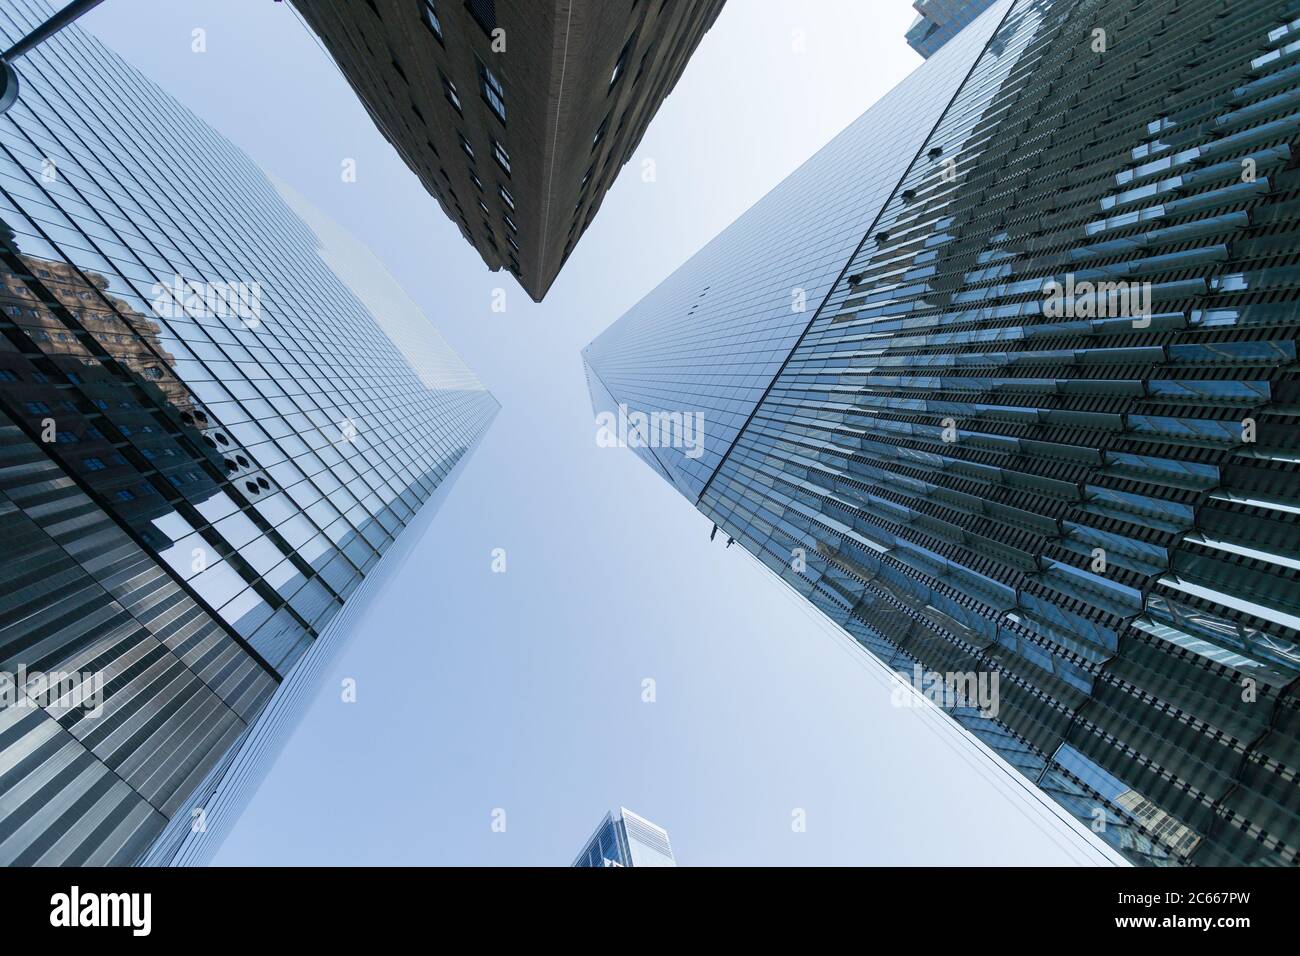 Imagen de gran angular en el rascacielos del bajo manhattan hasta el cielo con efecto espejo en el edificio. Perspectiva decreciente Foto de stock